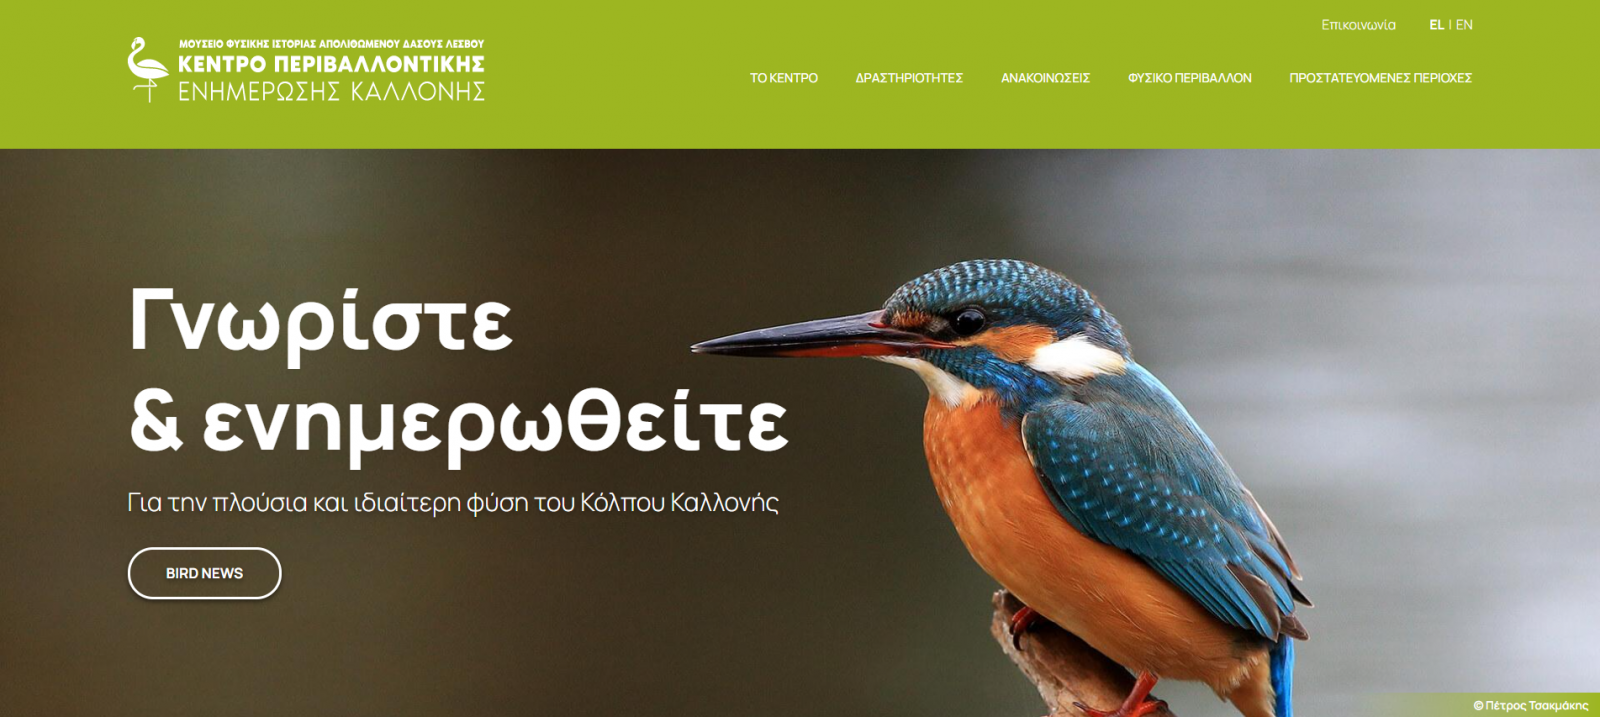 Ψηφιακή Ενημέρωση  για τα πουλιά της Λέσβου Ιστοσελίδα για την ανάδειξη της ορνιθοπανίδας  από το Κέντρο Περιβαλλοντικής Ενημέρωσης Καλλονής